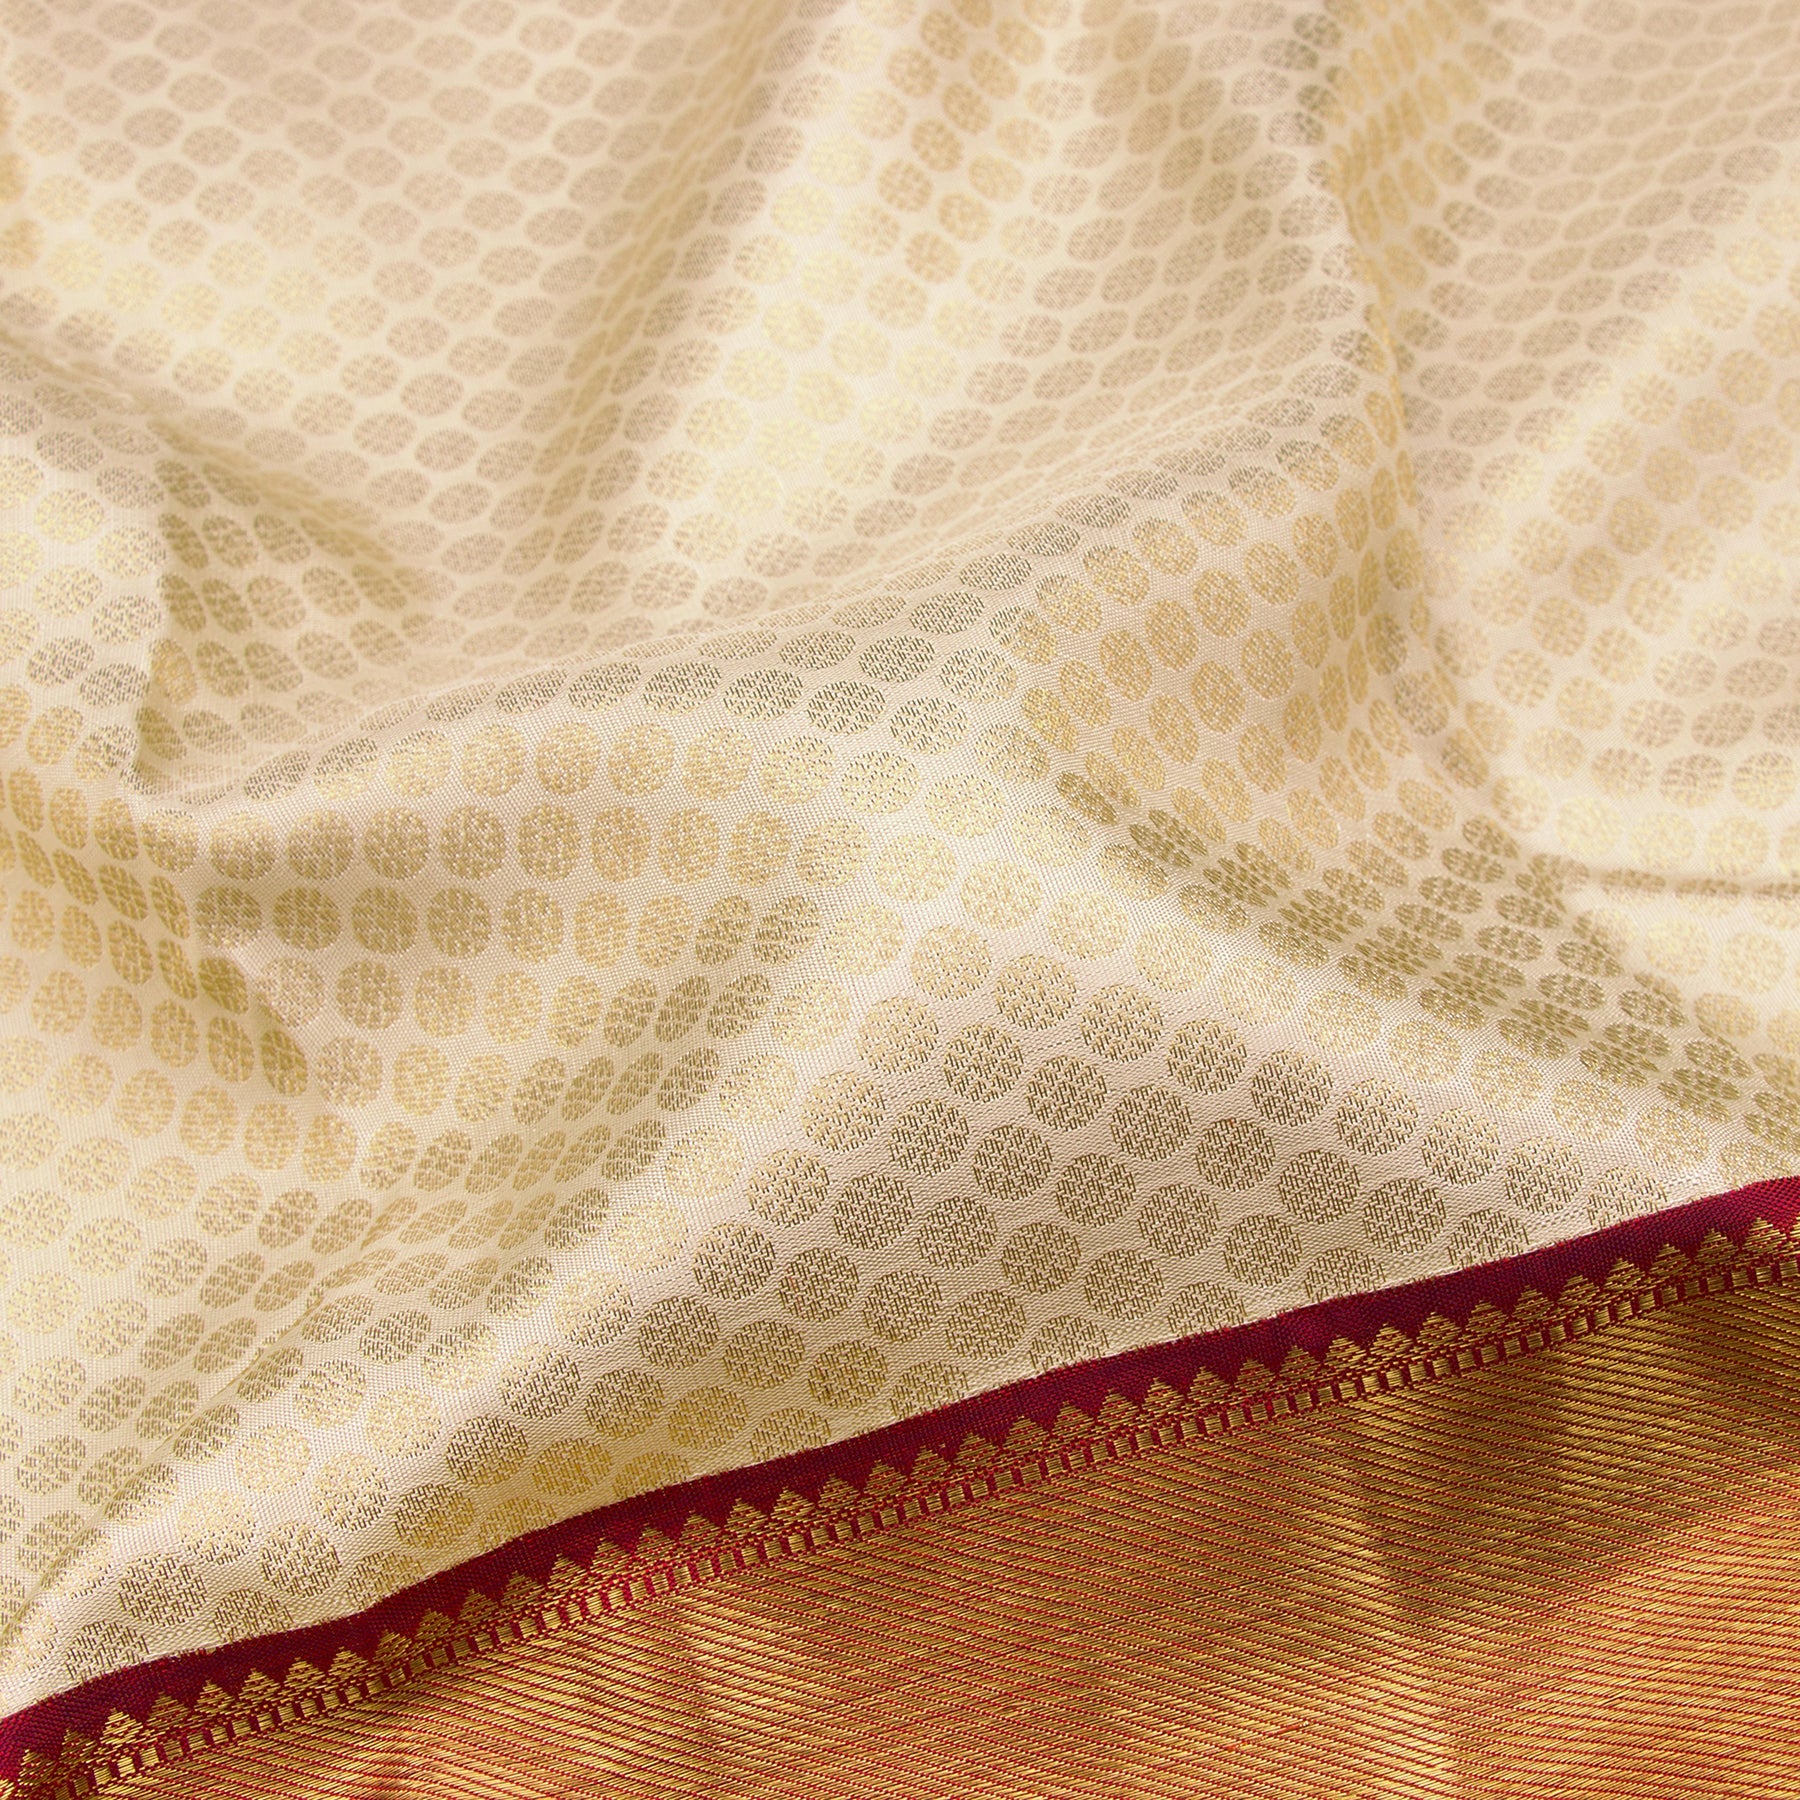 Kanakavalli Kanjivaram Silk Sari 23-110-HS001-00973 - Fabric View